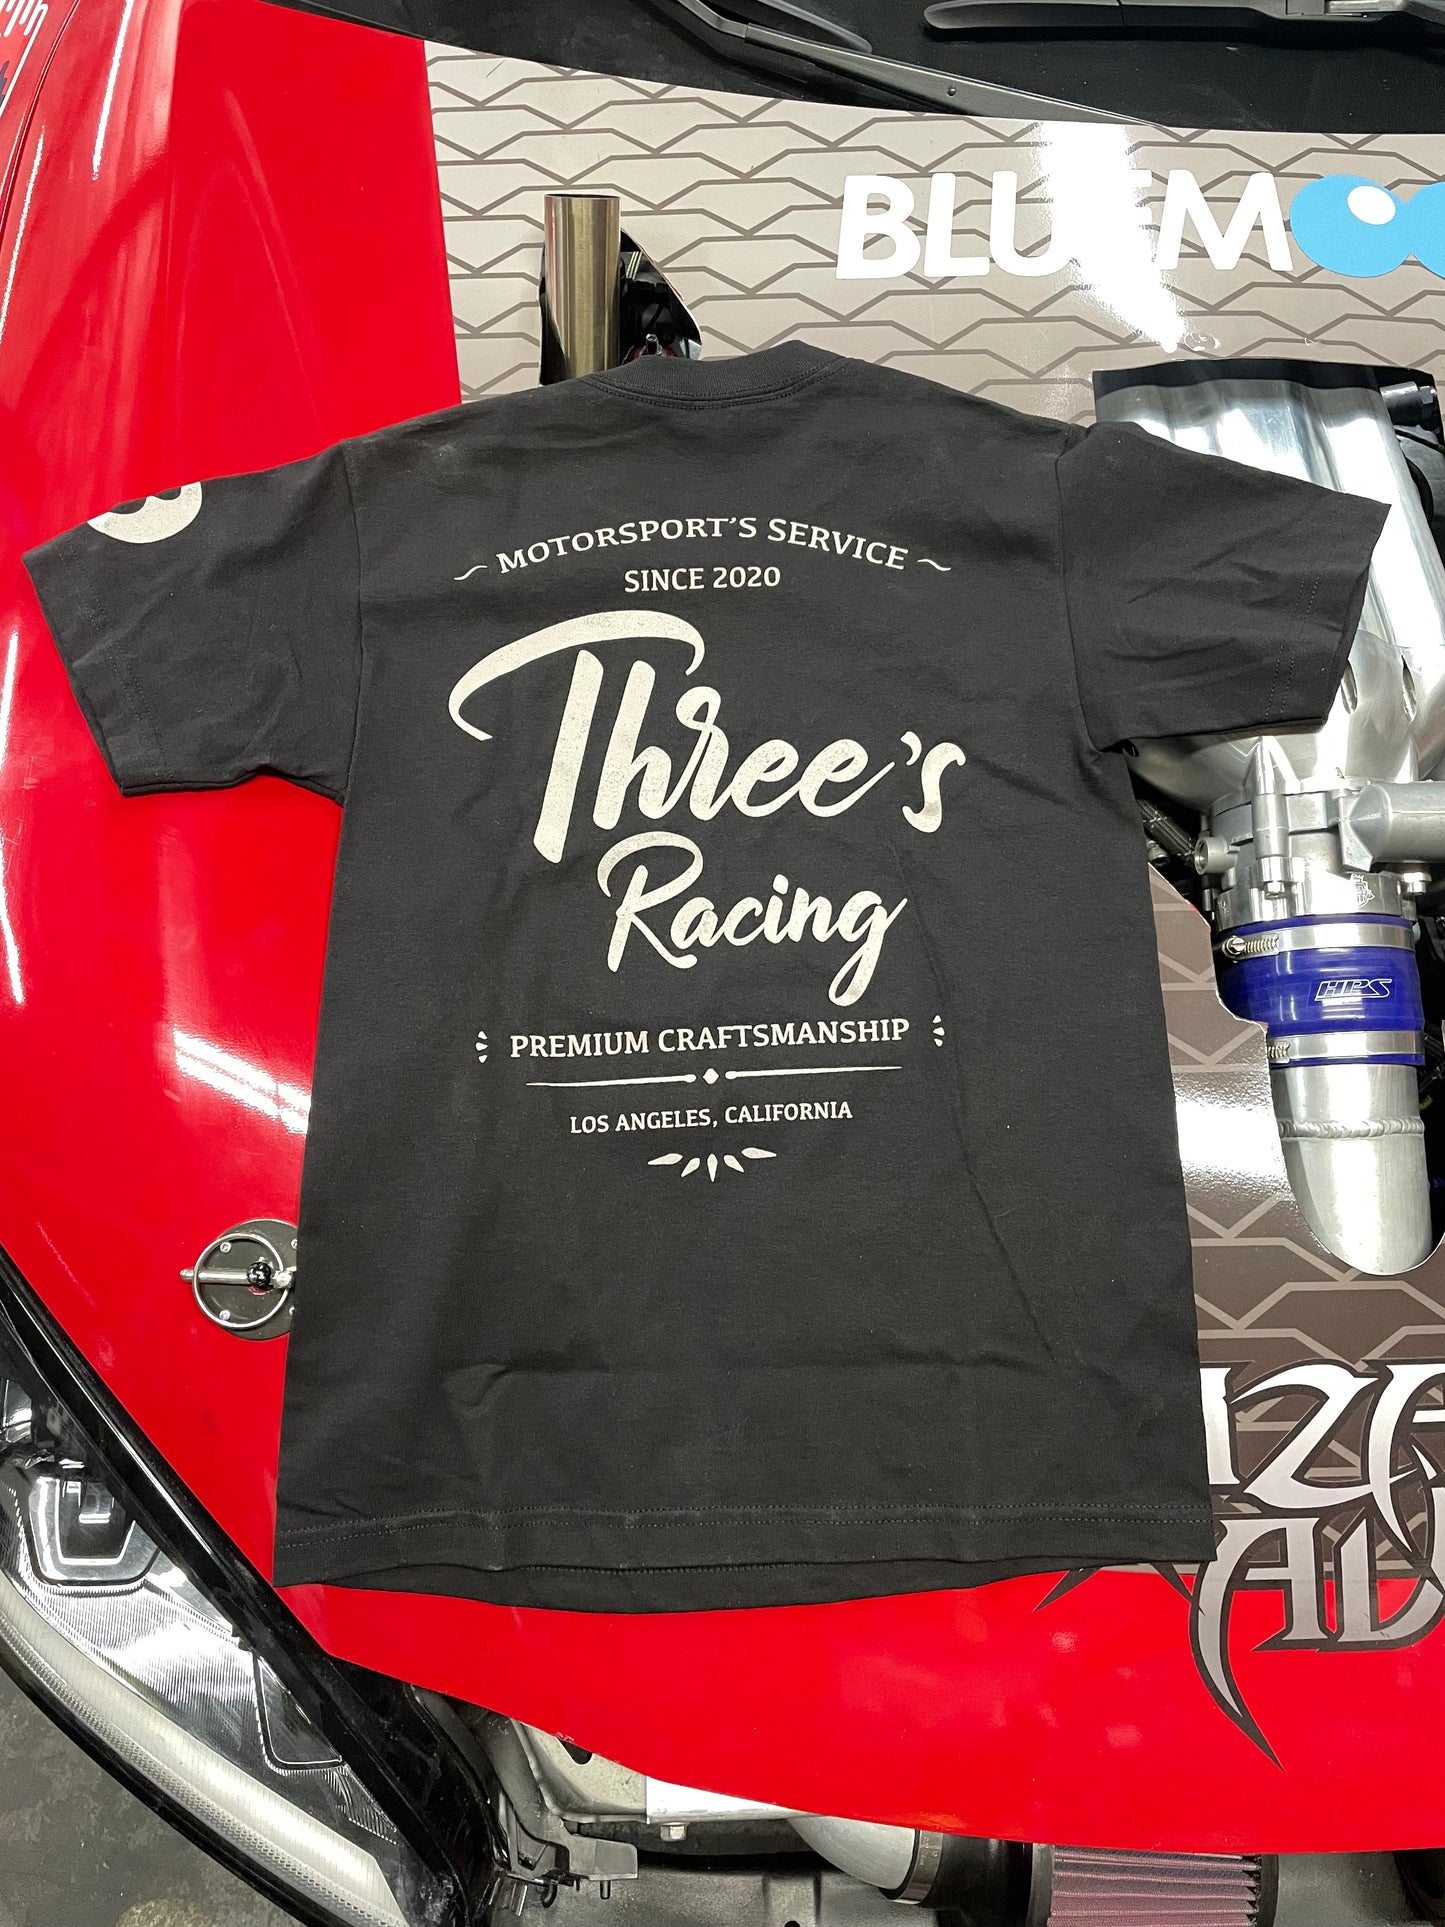 Three's Racing Motorsport Service Tee